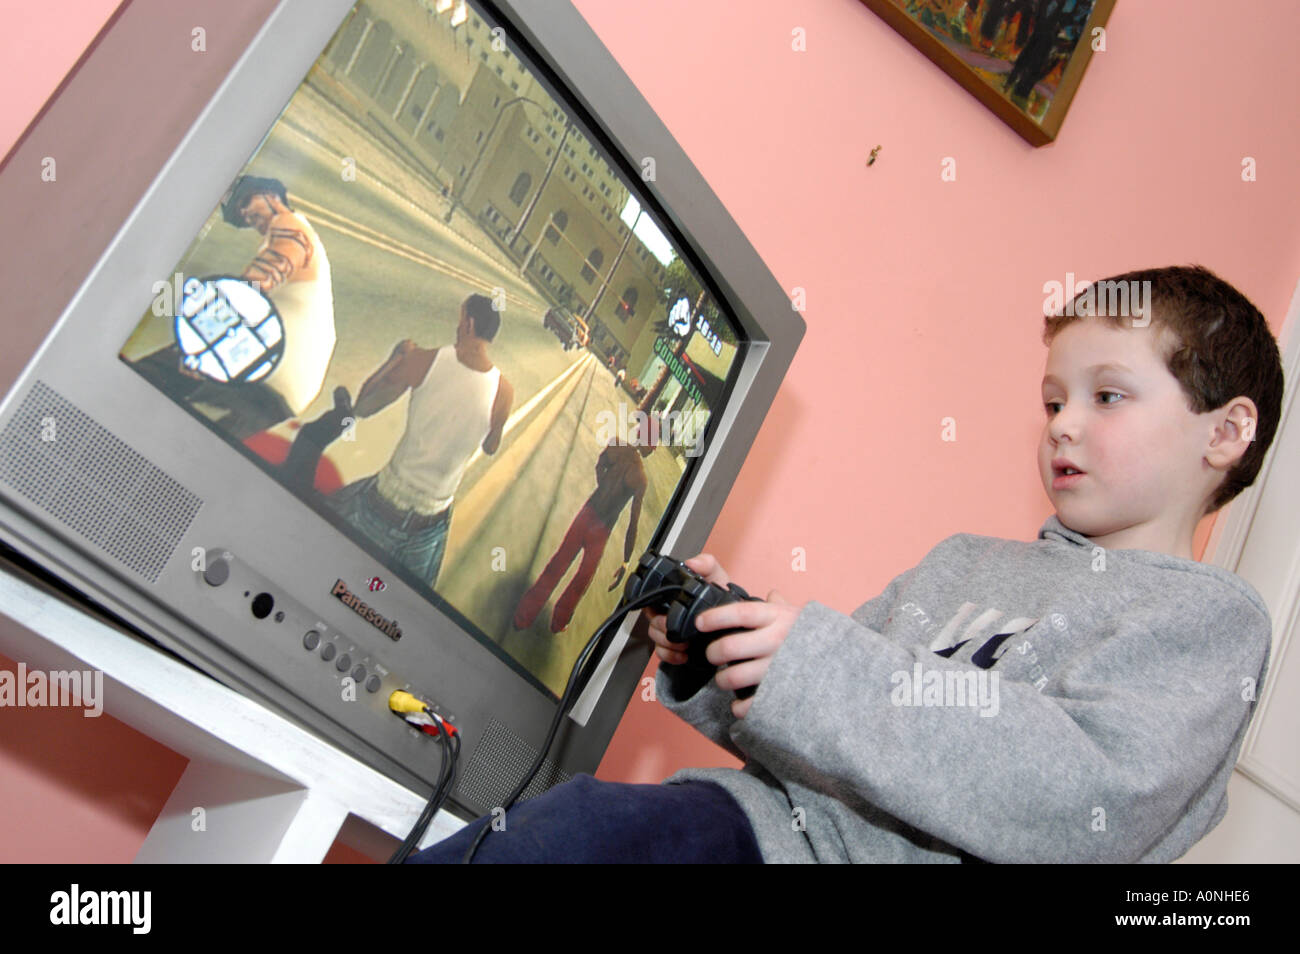 Jungen spielen gewalttätige 18 Zertifikat bewertet Computerspiel Grand Theft Auto auf Sony Playstation Konsole, England, UK Stockfoto